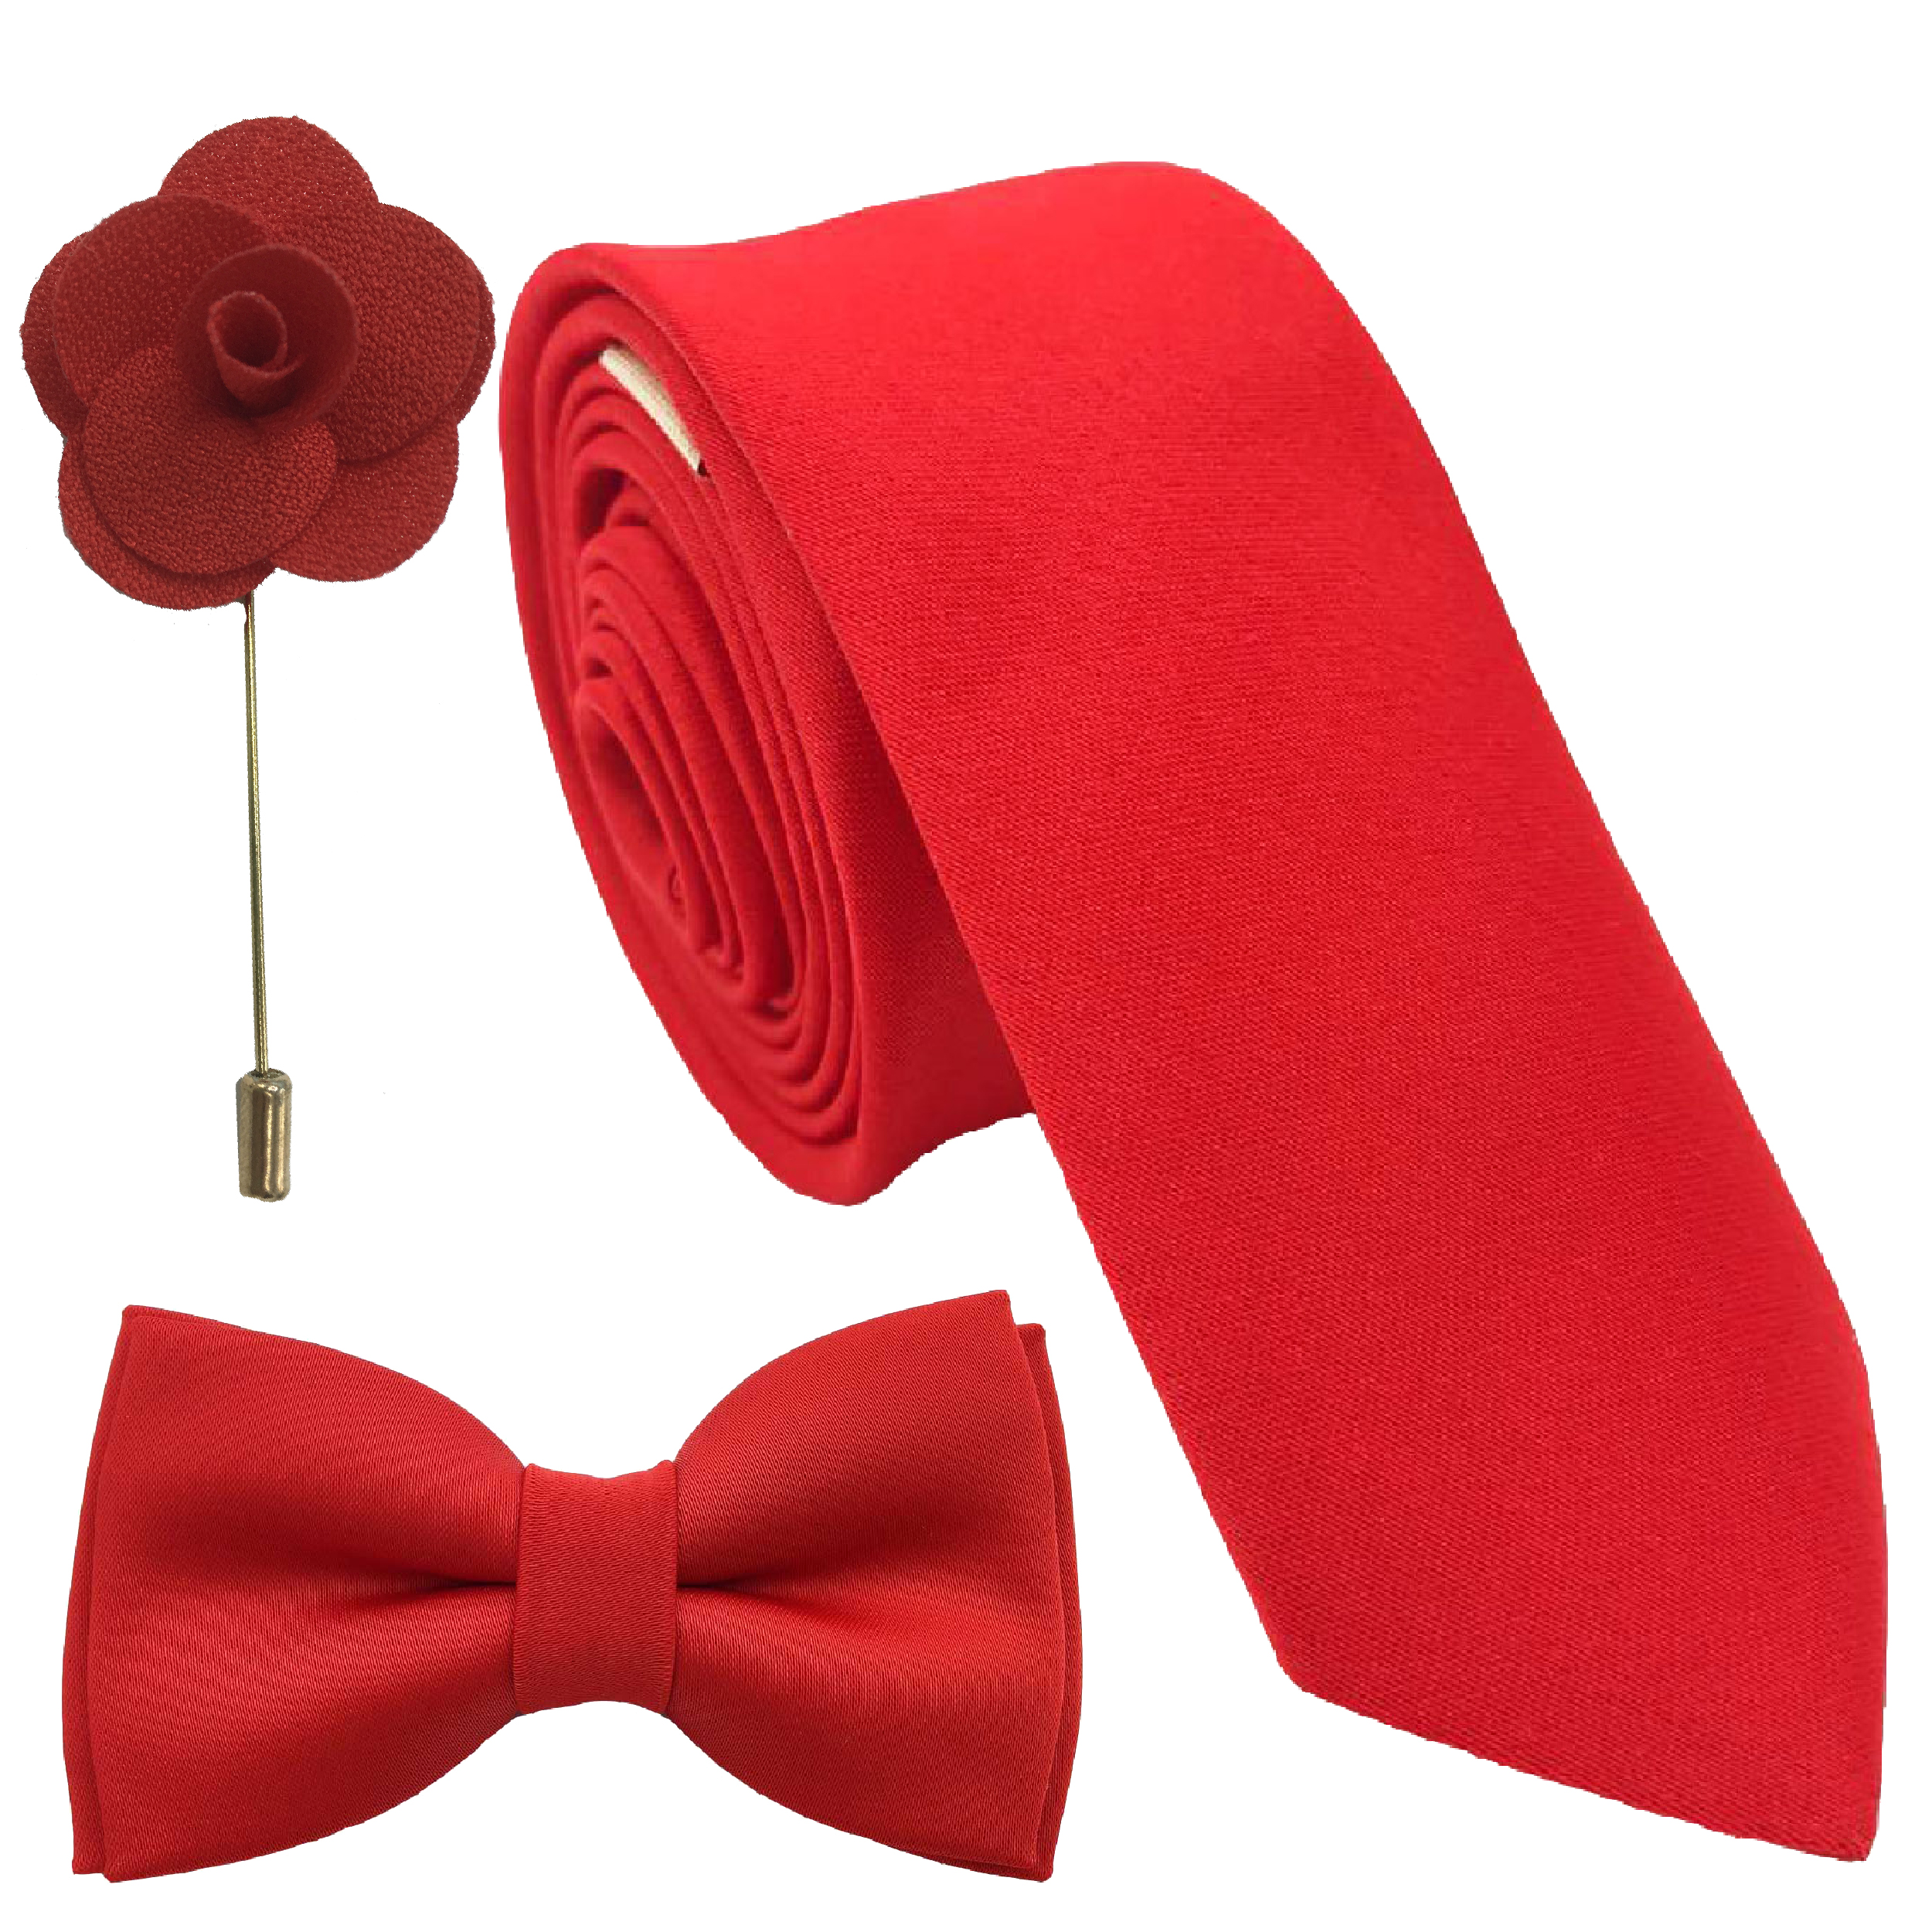 ست کراوات پاپیون و گل کت هکس ایران مدل SET-SM RED